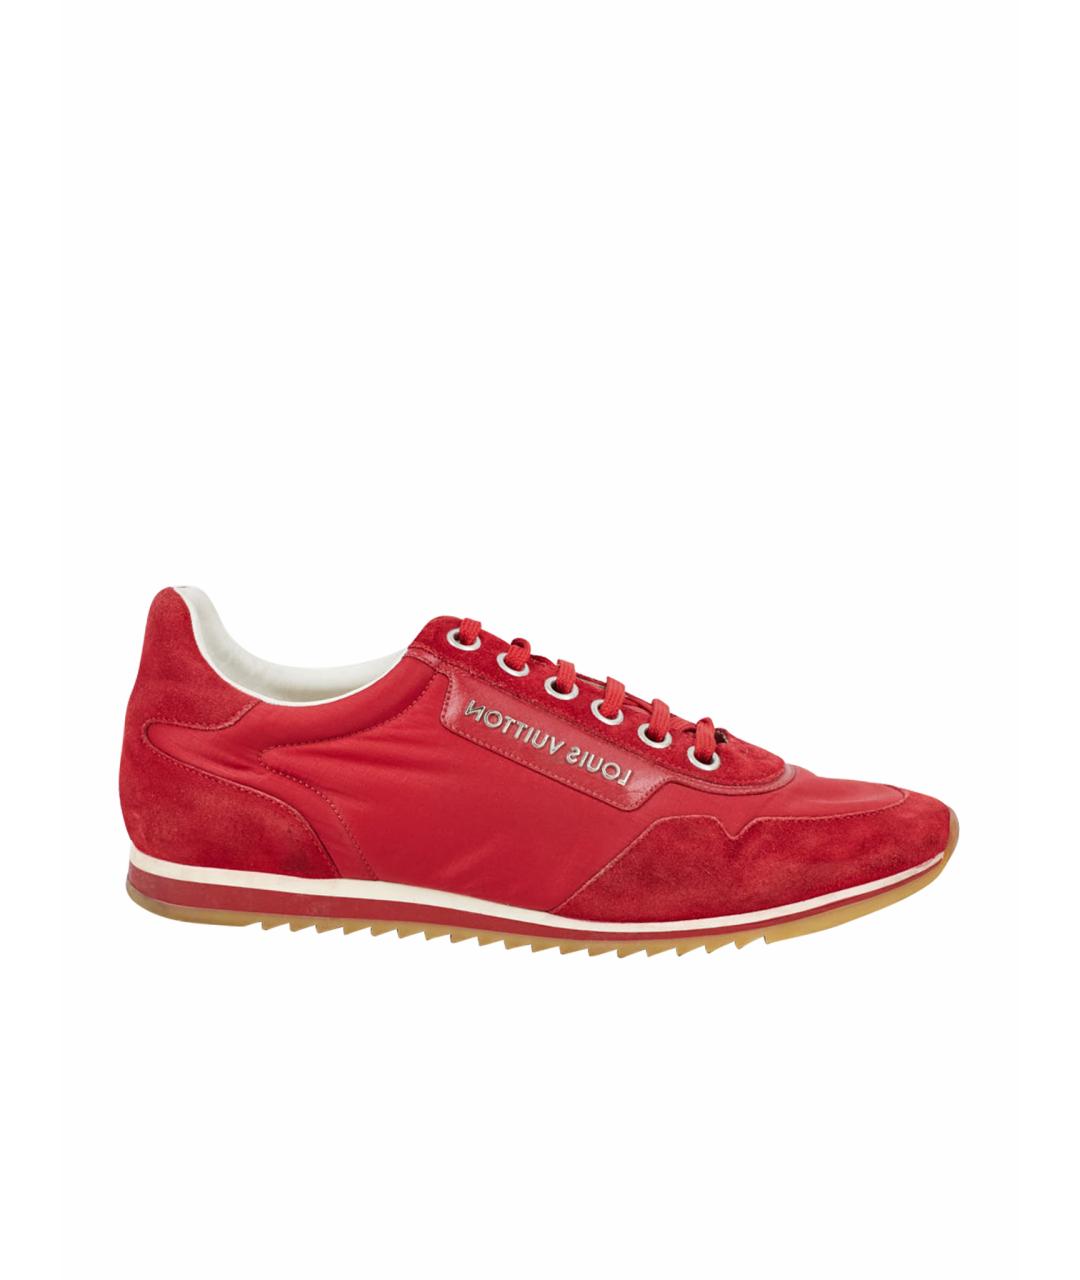 LOUIS VUITTON PRE-OWNED Красные текстильные низкие кроссовки / кеды, фото 1